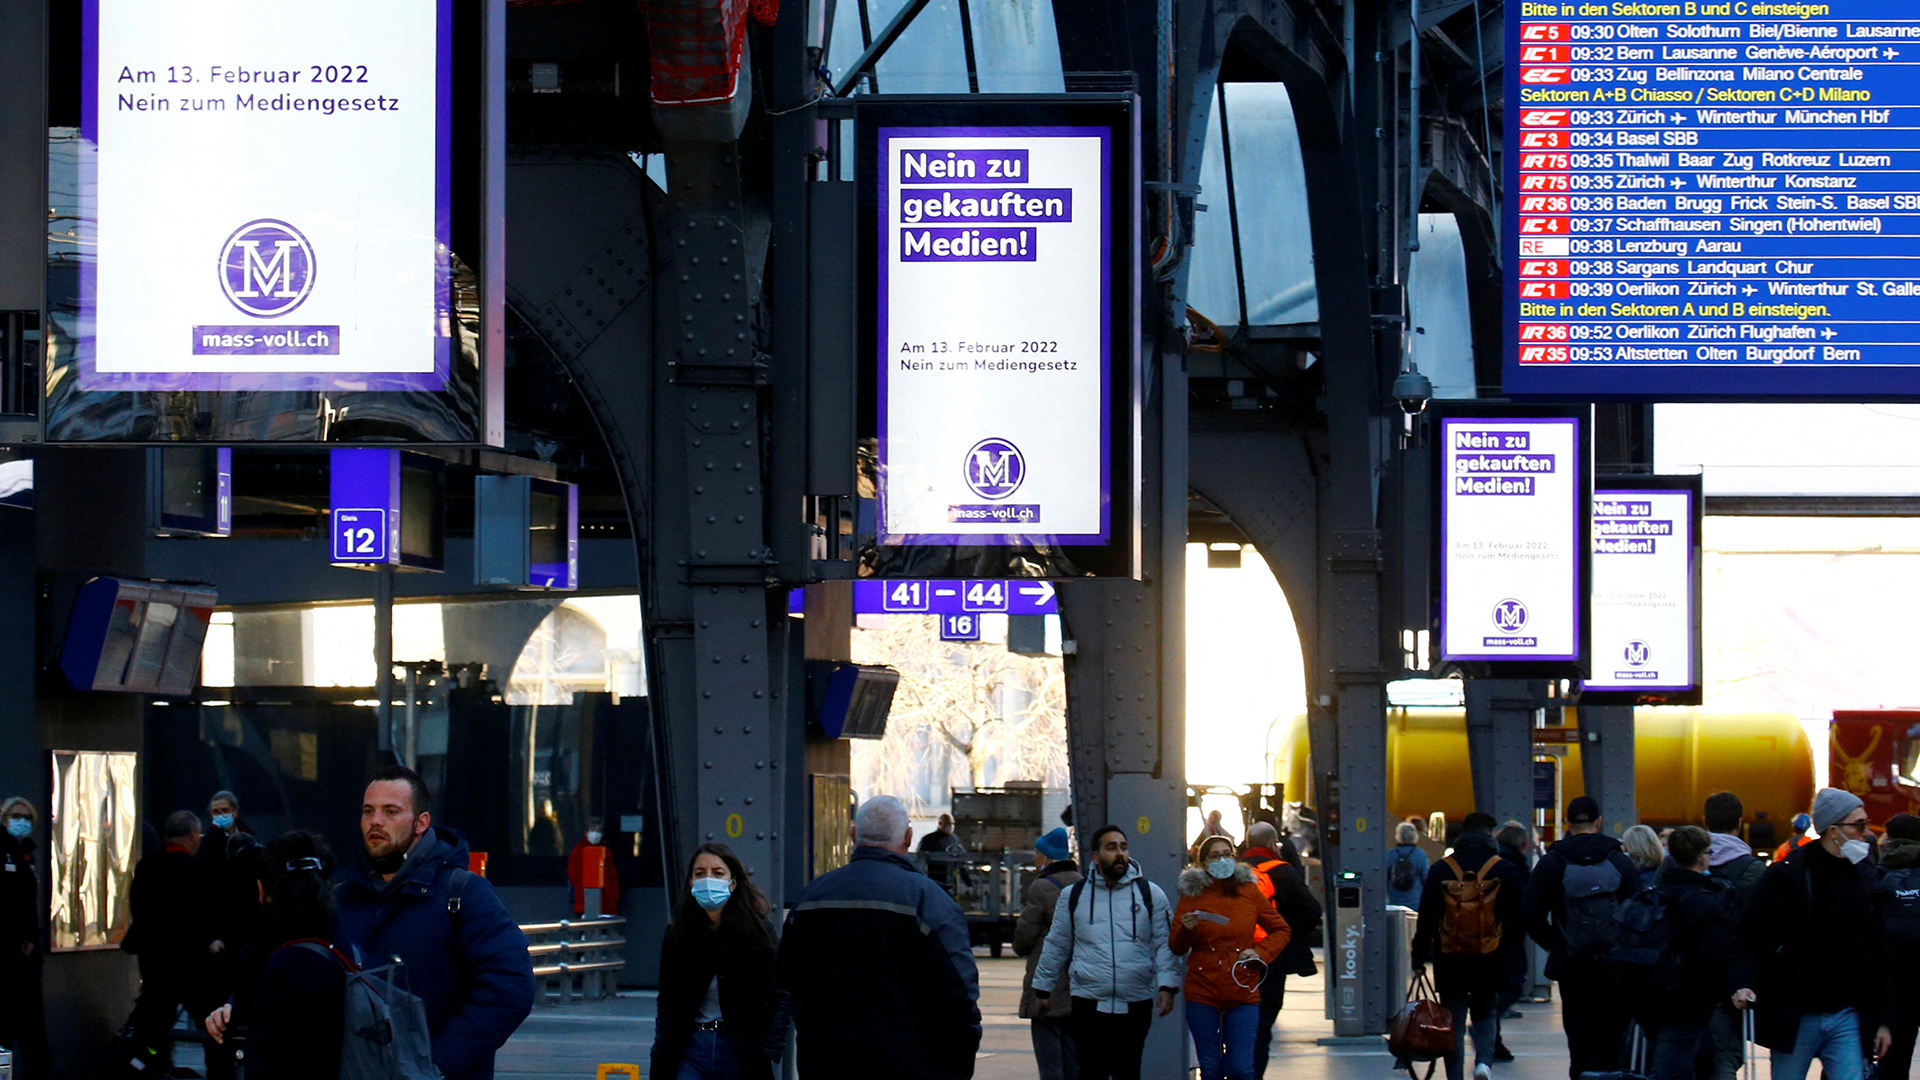 Anzeigetafeln mit "Nein zu gekauften Medien" auf dem Bahnhof in Zürich. | REUTERS